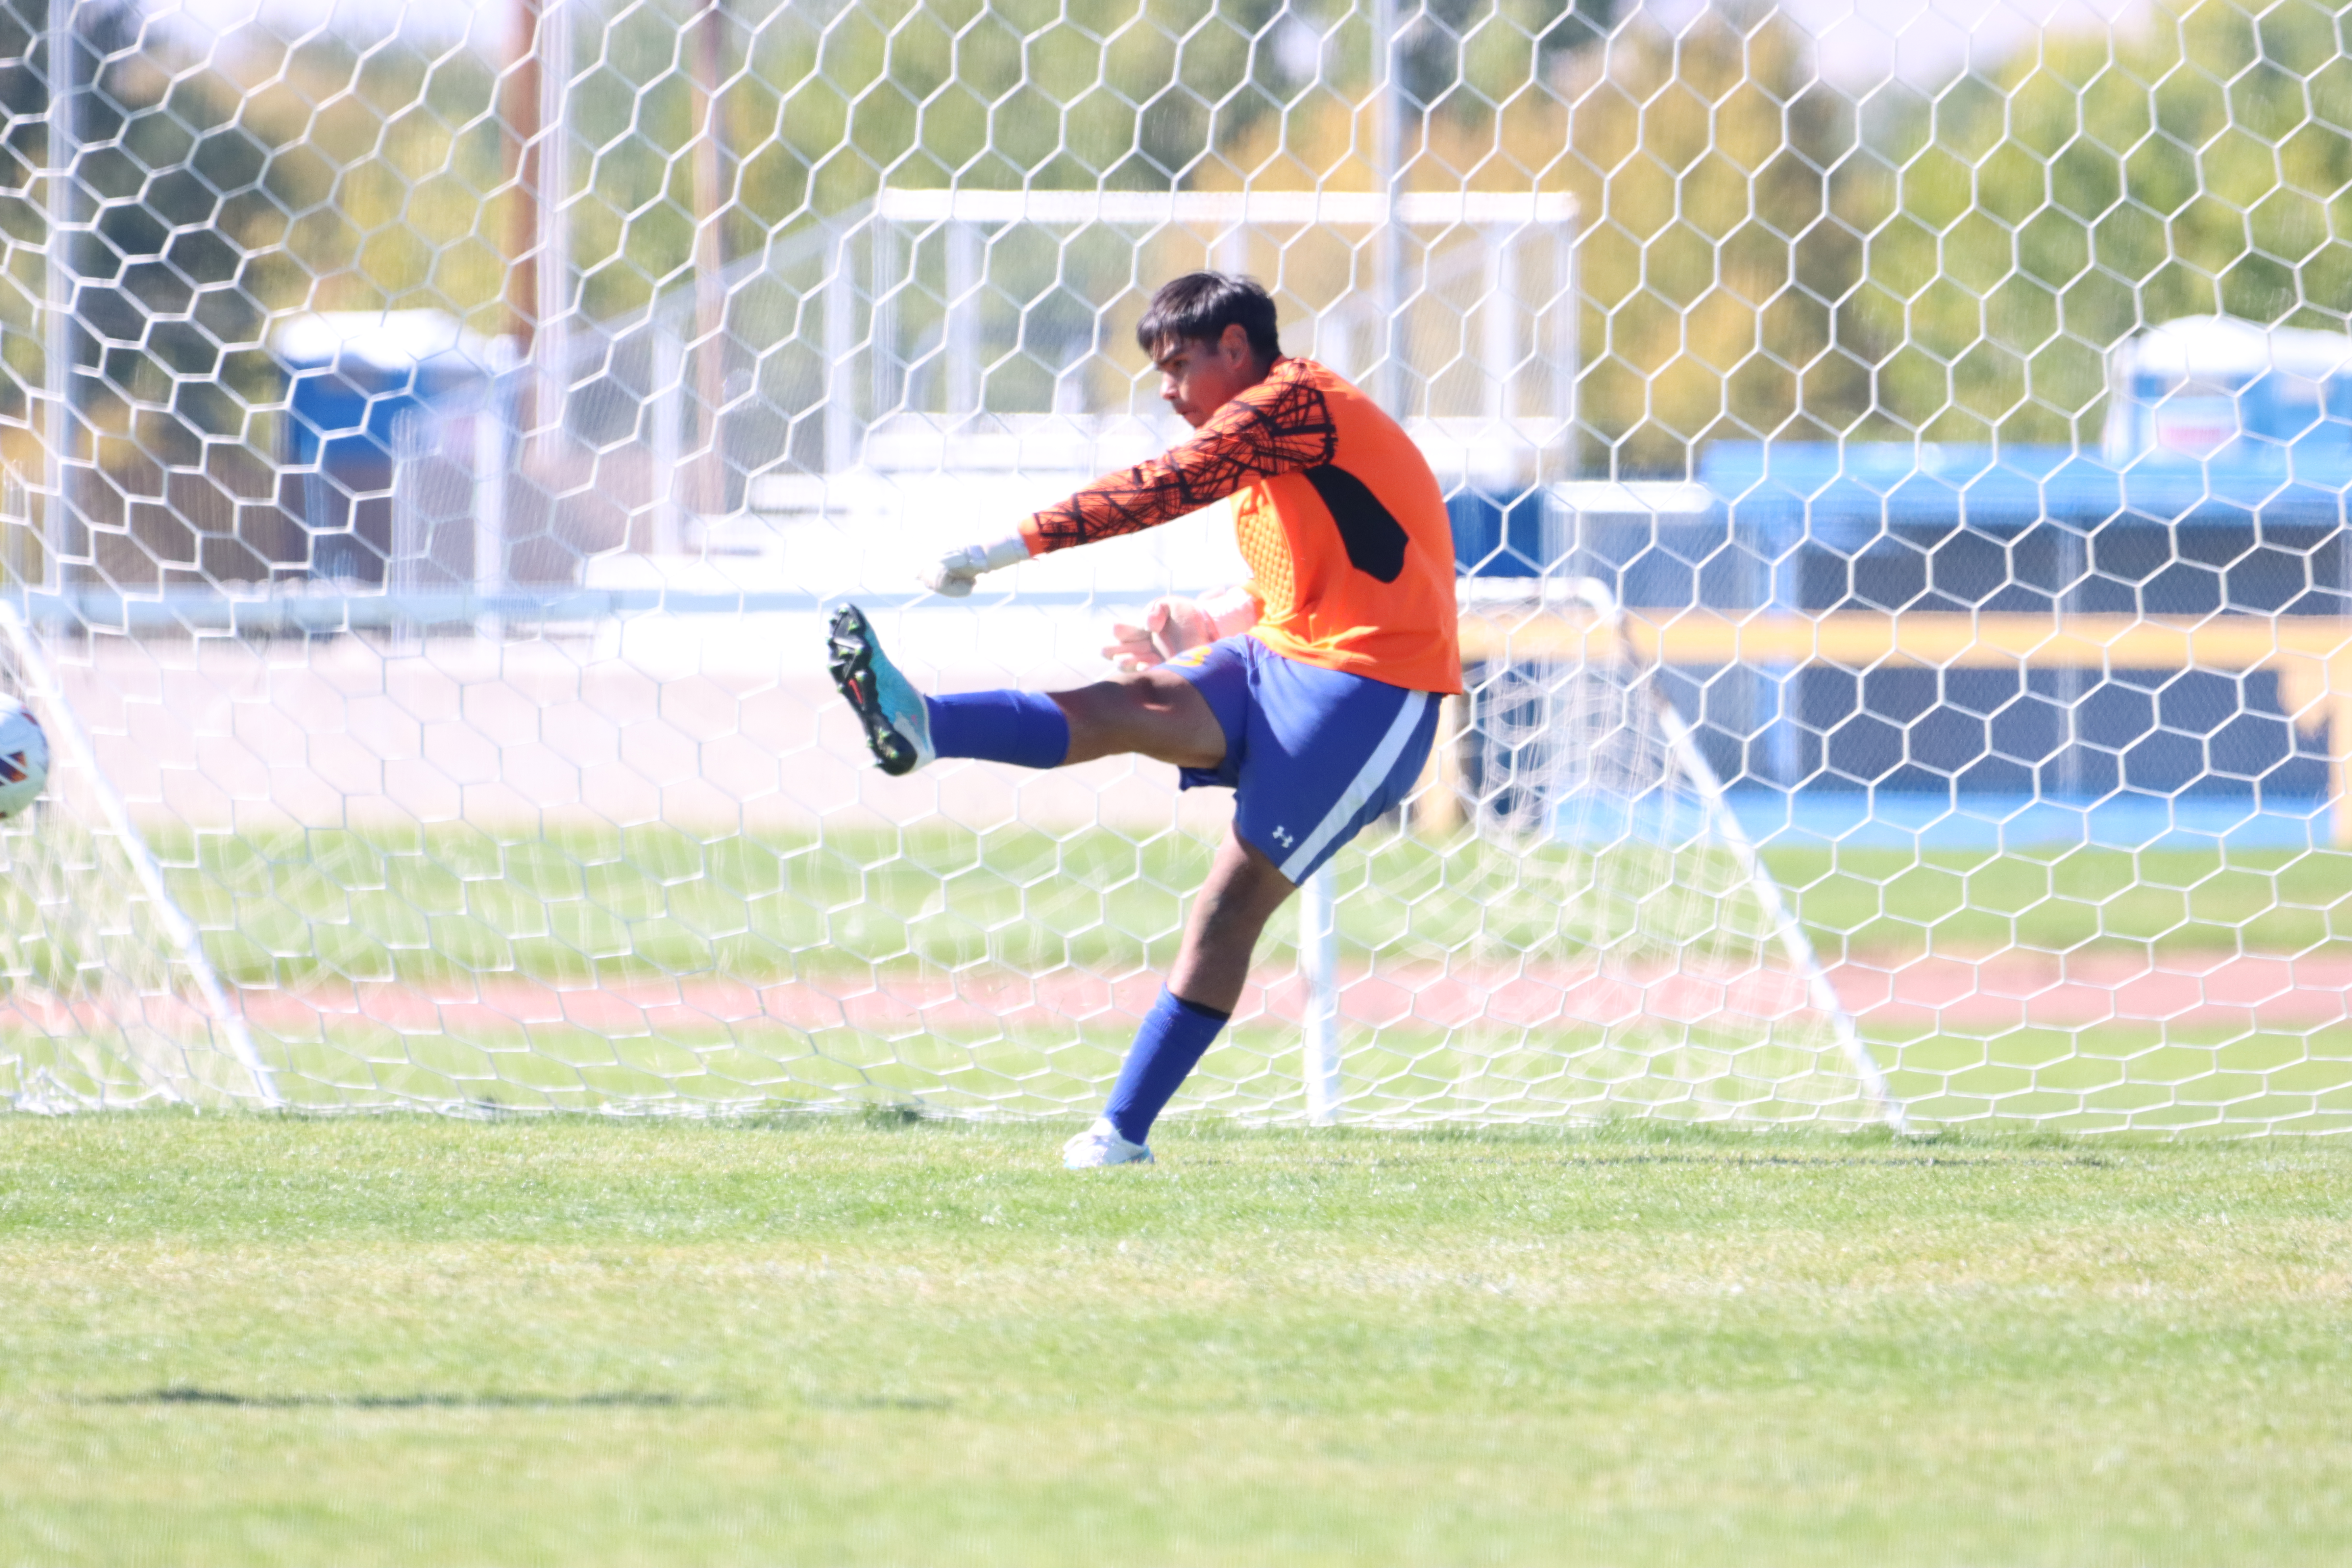 Goalie, Izayus Barajas makes a kick toward their goal./Ron Espinola • The Brand